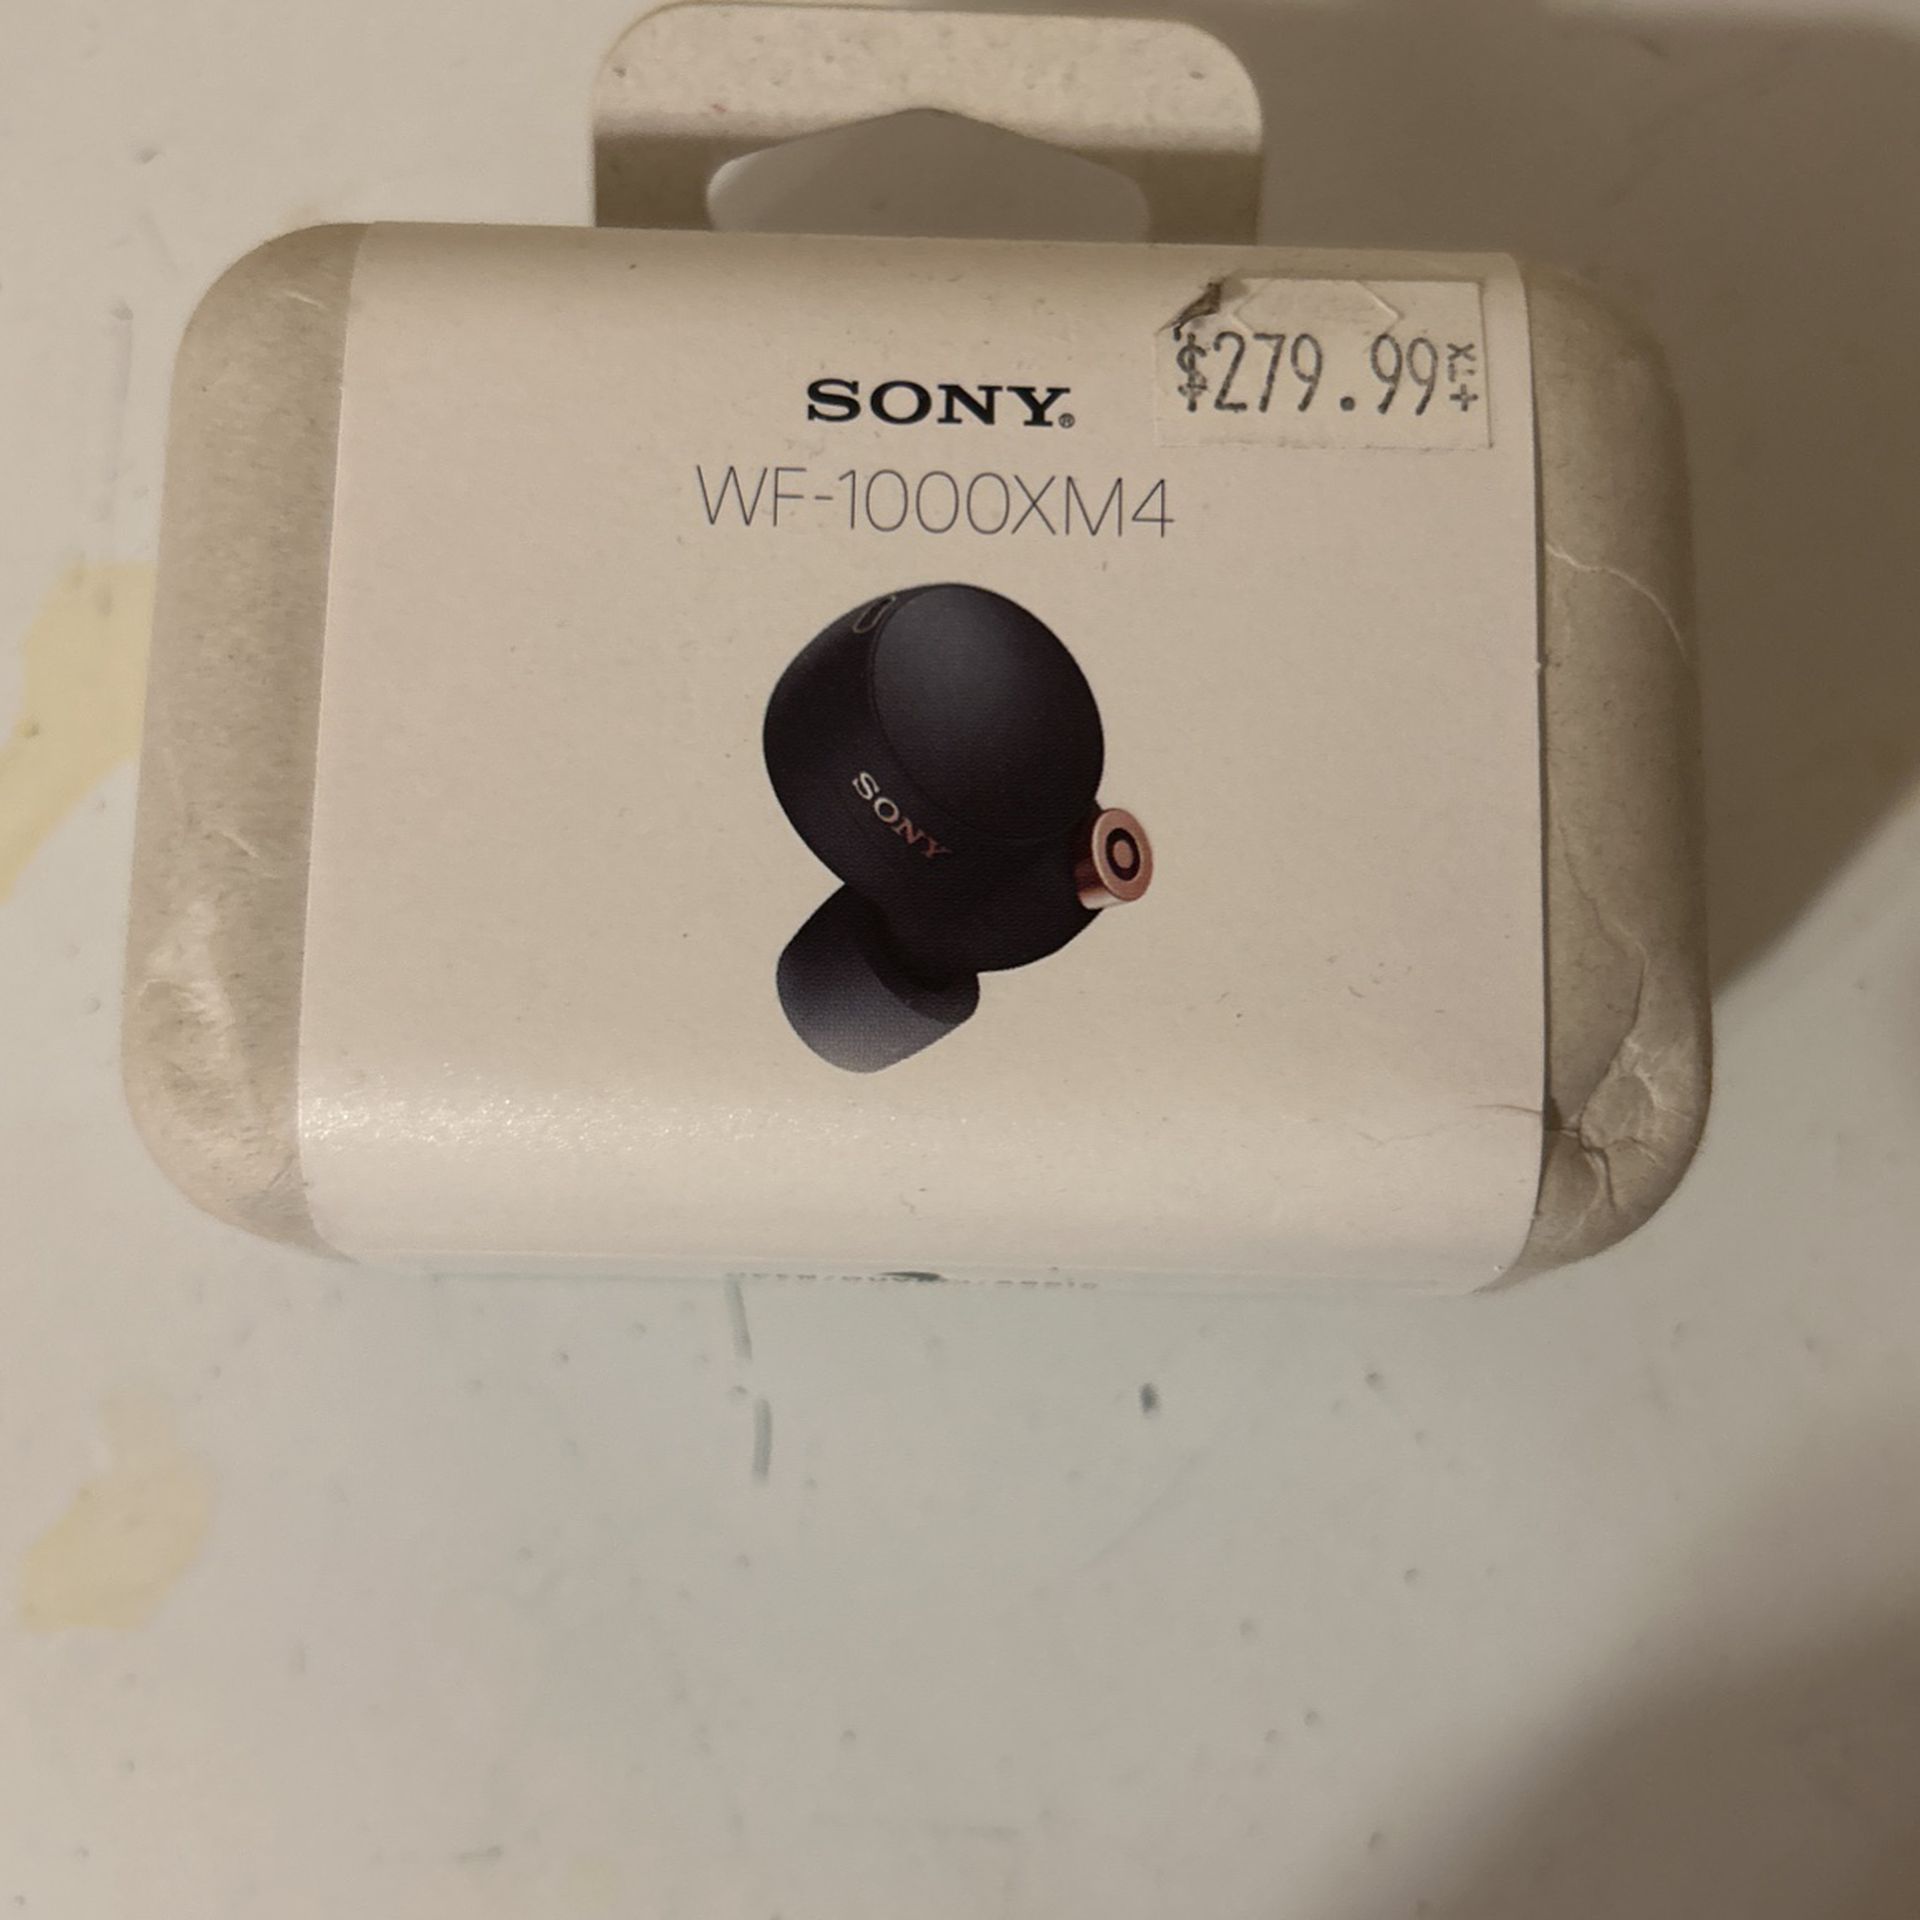 Sony Earbuds WF-1000XM4